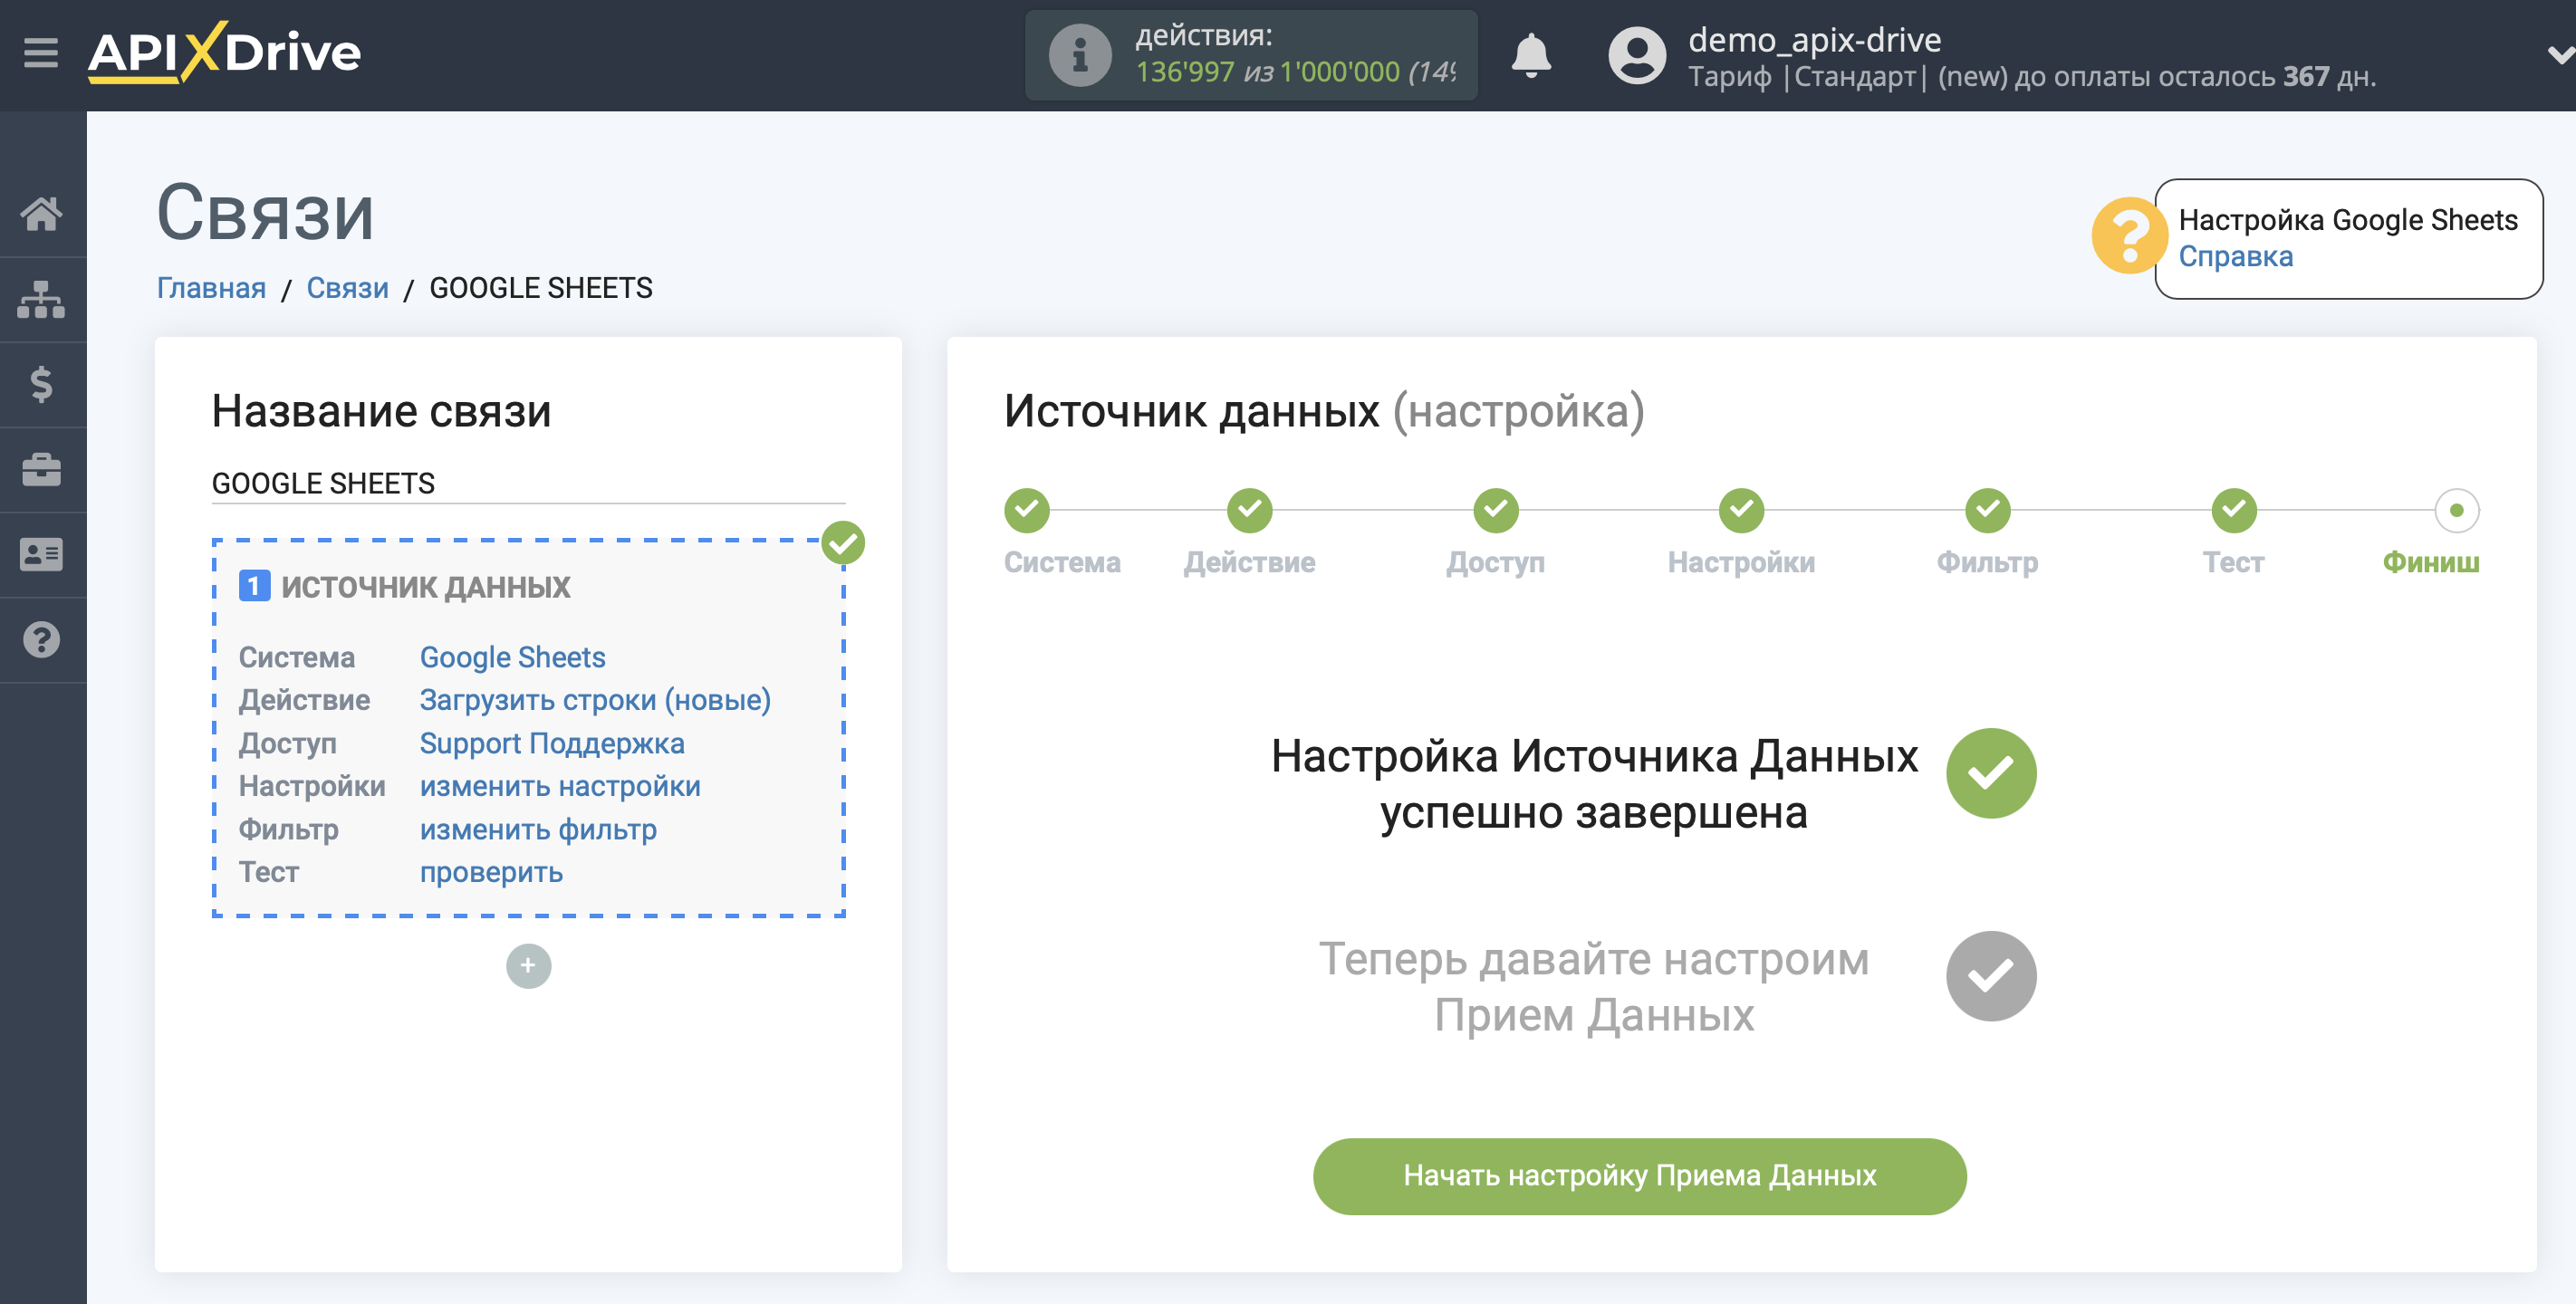 Настройка Приема данных в SMS Украина | Переход к настройке Приема данных